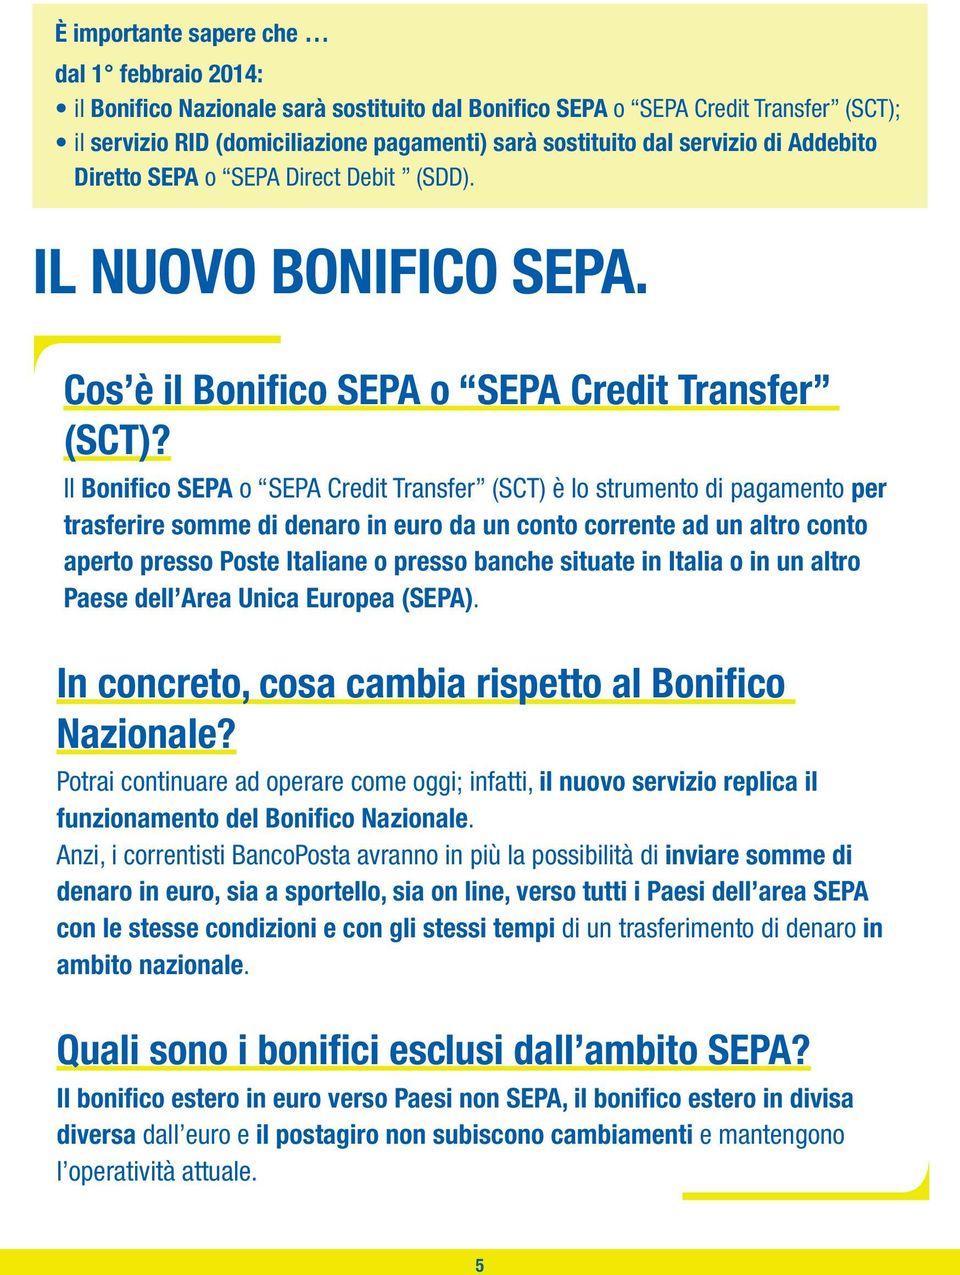 Il Bonifico SEPA o SEPA Credit Transfer (SCT) è lo strumento di pagamento per trasferire somme di denaro in euro da un conto corrente ad un altro conto aperto presso Poste Italiane o presso banche